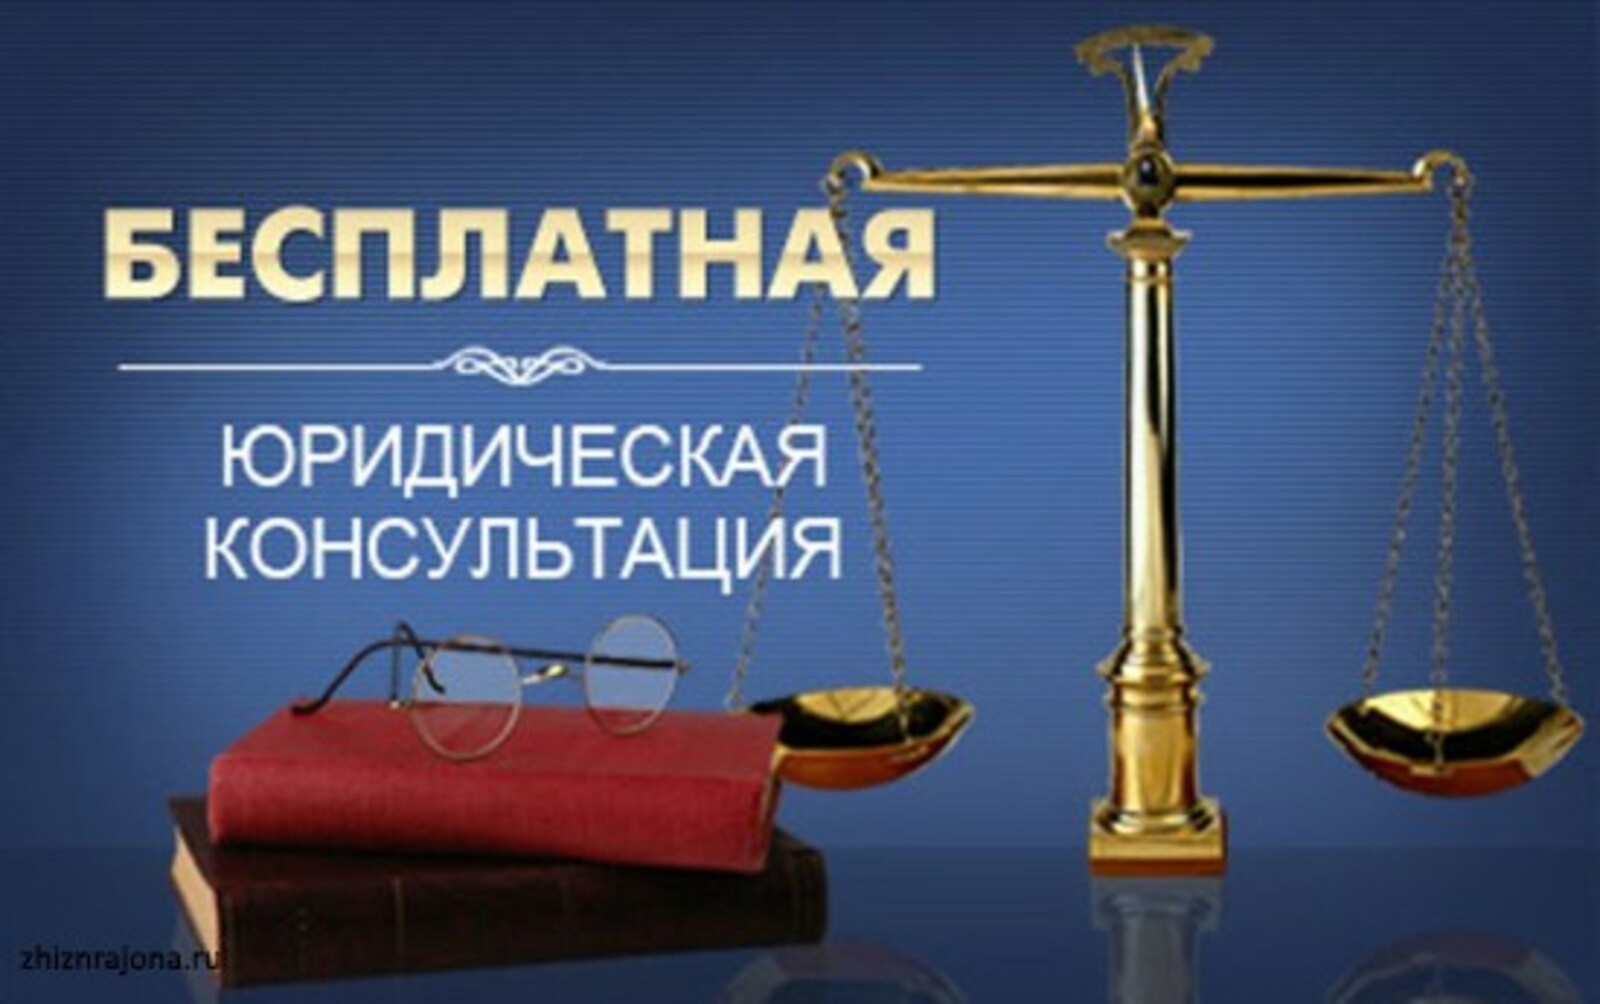 31 марта 2023 года Ассоциация юристов России планирует провести очередной Единый день бесплатной юридической помощи.